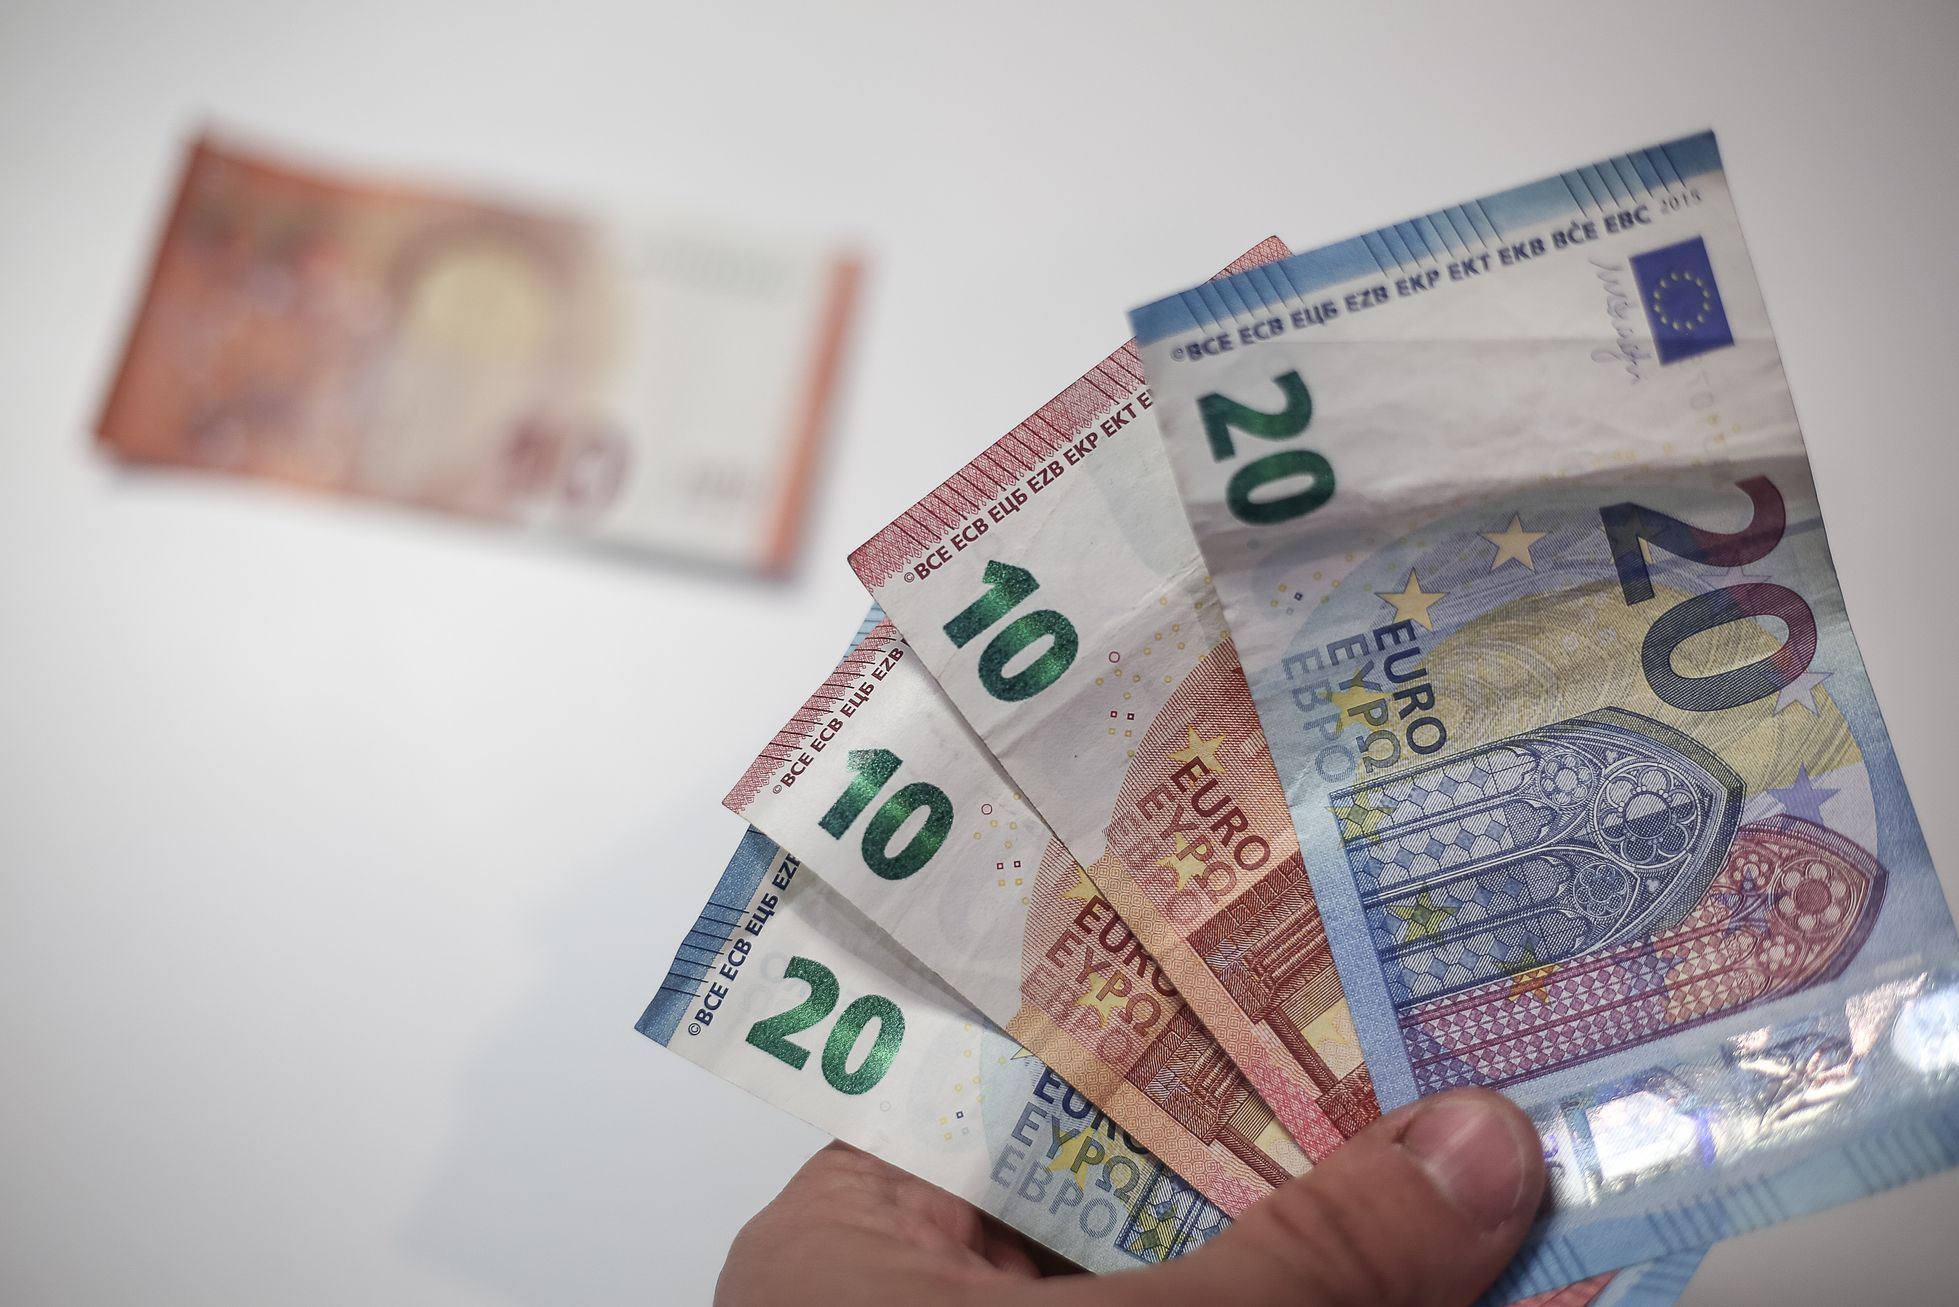 Ilustrační foto, peníze, hotovost, bankovky, Euro, Dolar, Česká koruna, Kč, směna